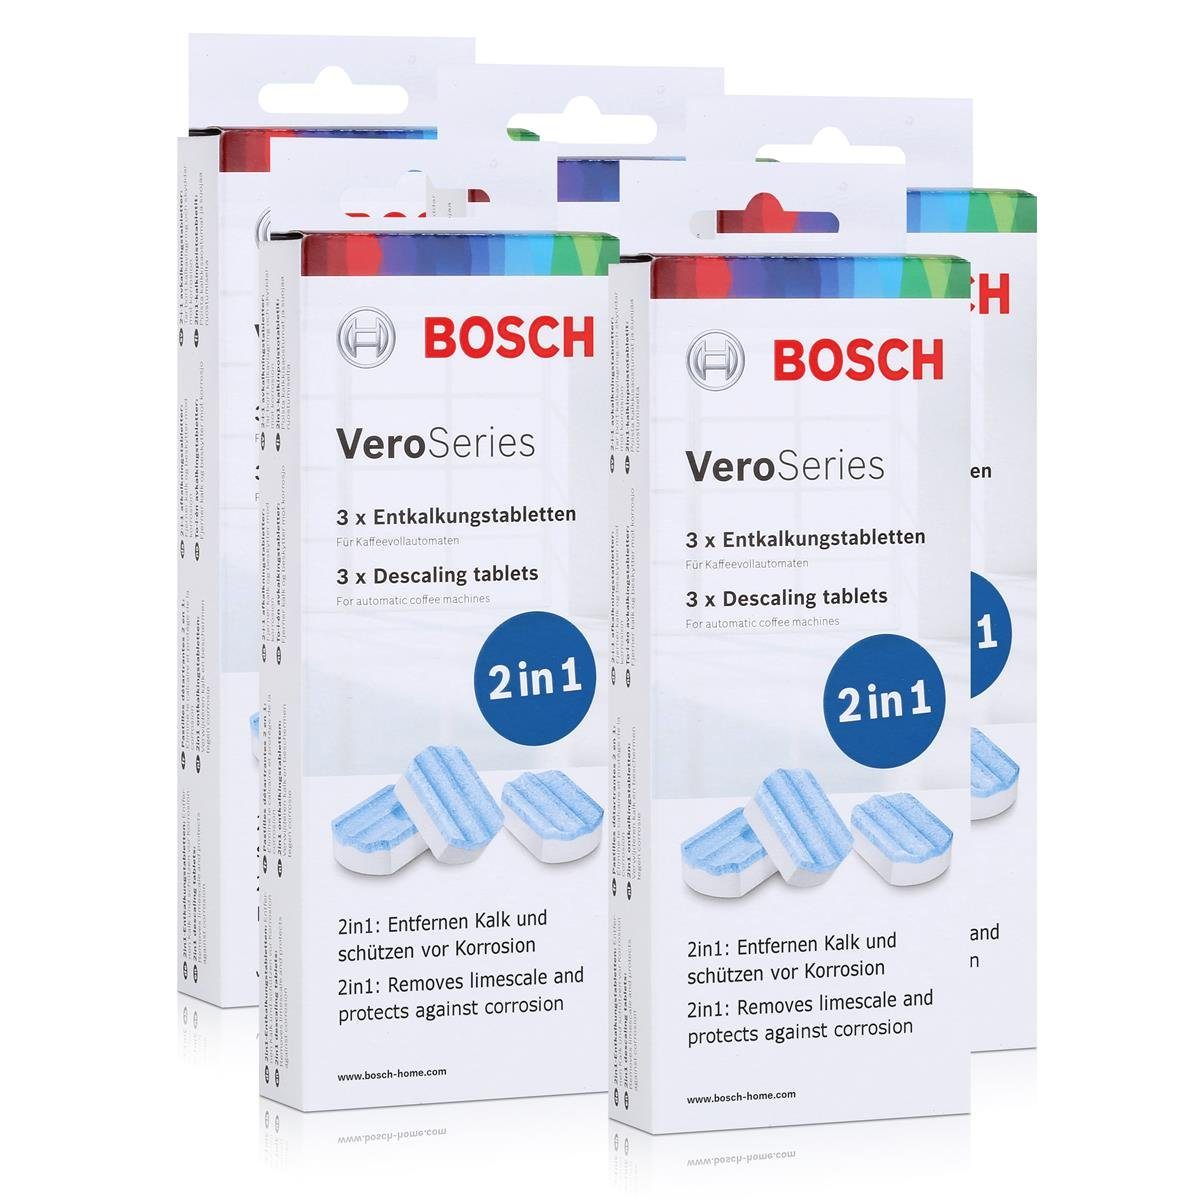 2in1 TCZ8002 BOSCH für VeroSeries Kaffeevollau Entkalkungstabletten 5x Entkalker Bosch